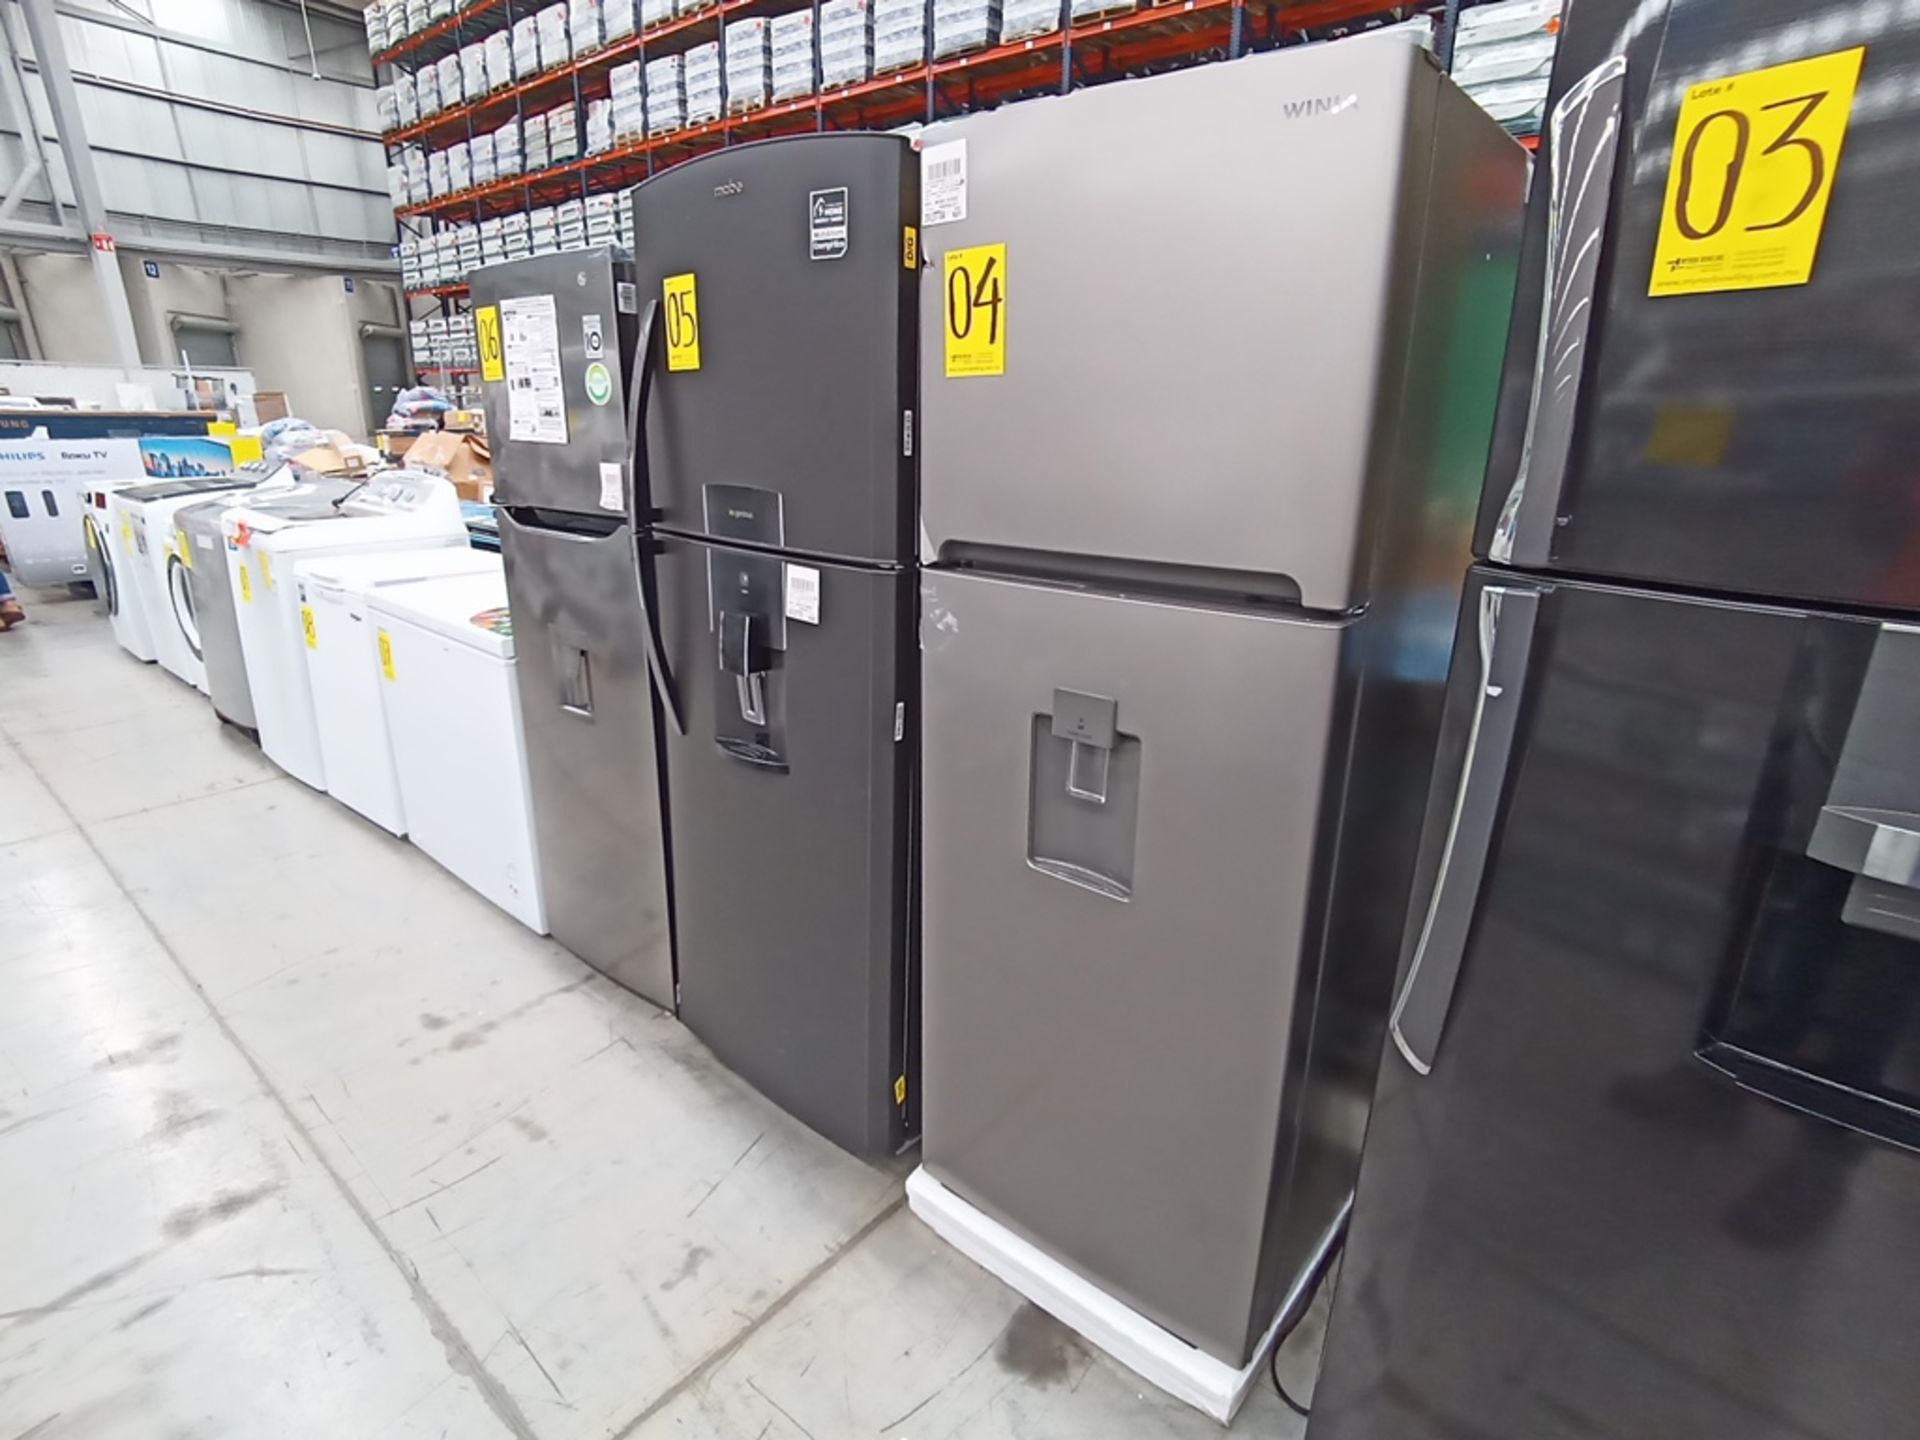 1 Refrigerador con dispensador de agua, Marca Winia, Modelo DFR-32210GMX, Serie MR217N10140659, Col - Image 4 of 10